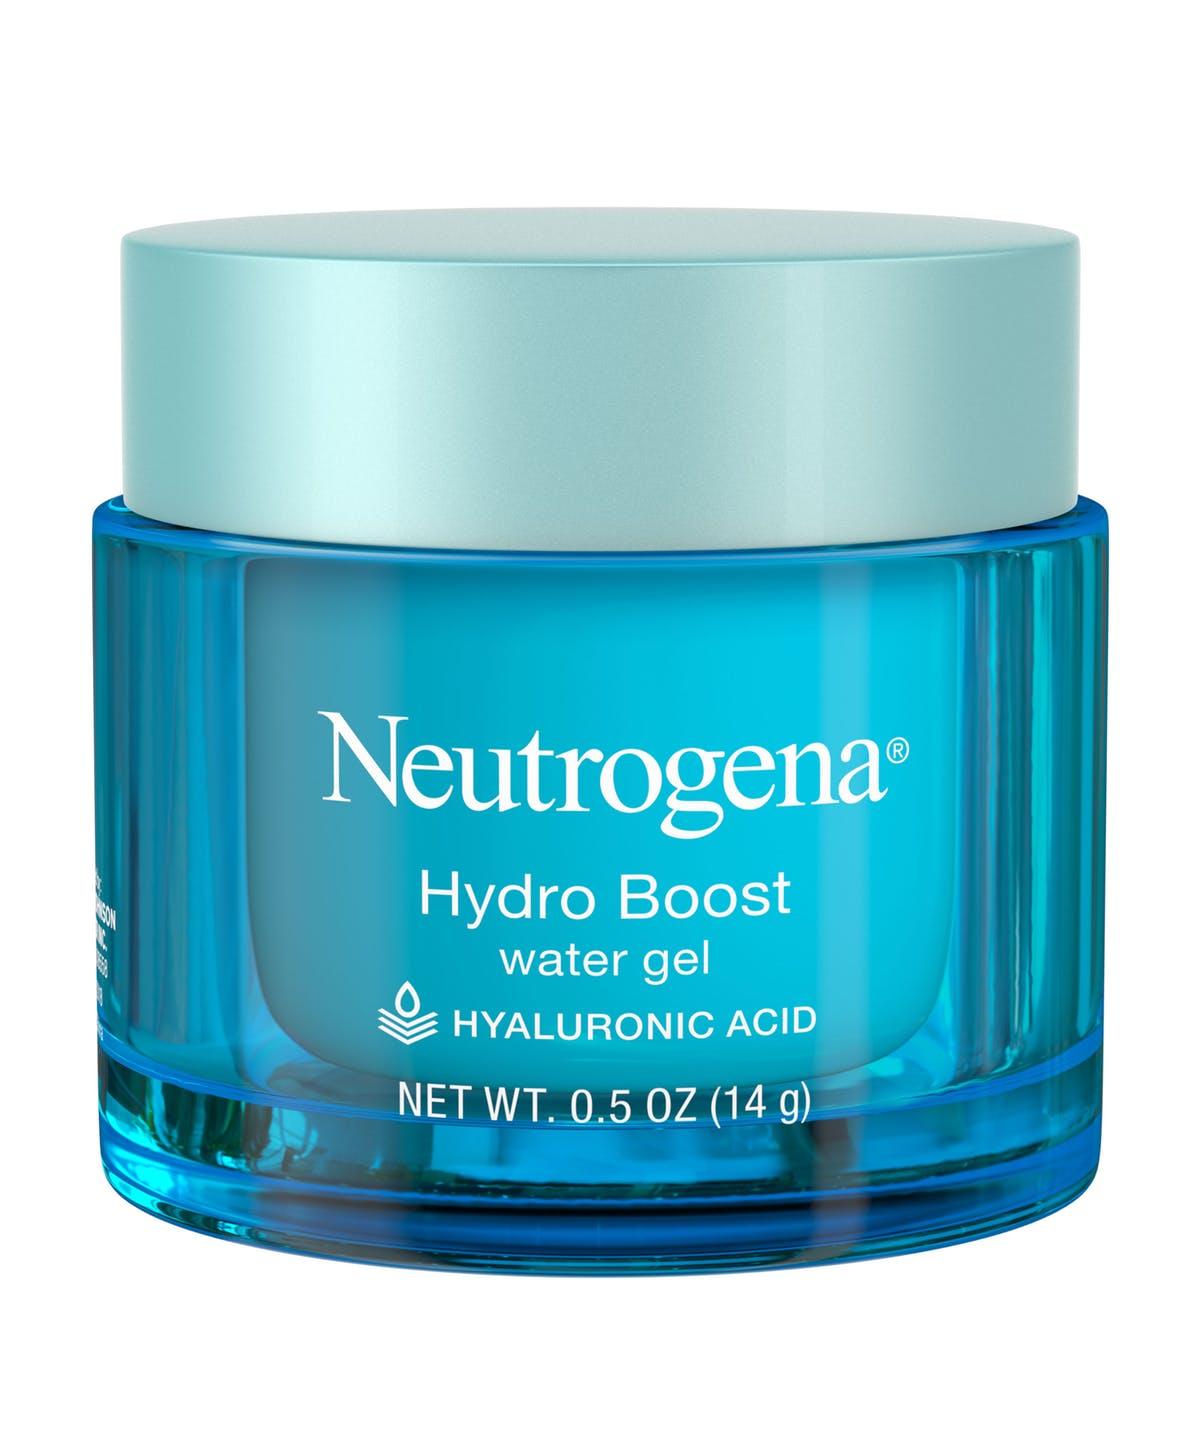 Đối với da nhờn thì Neutrogena là loại gel dưỡng ẩm rất phù hợp. (ngồn: internet)